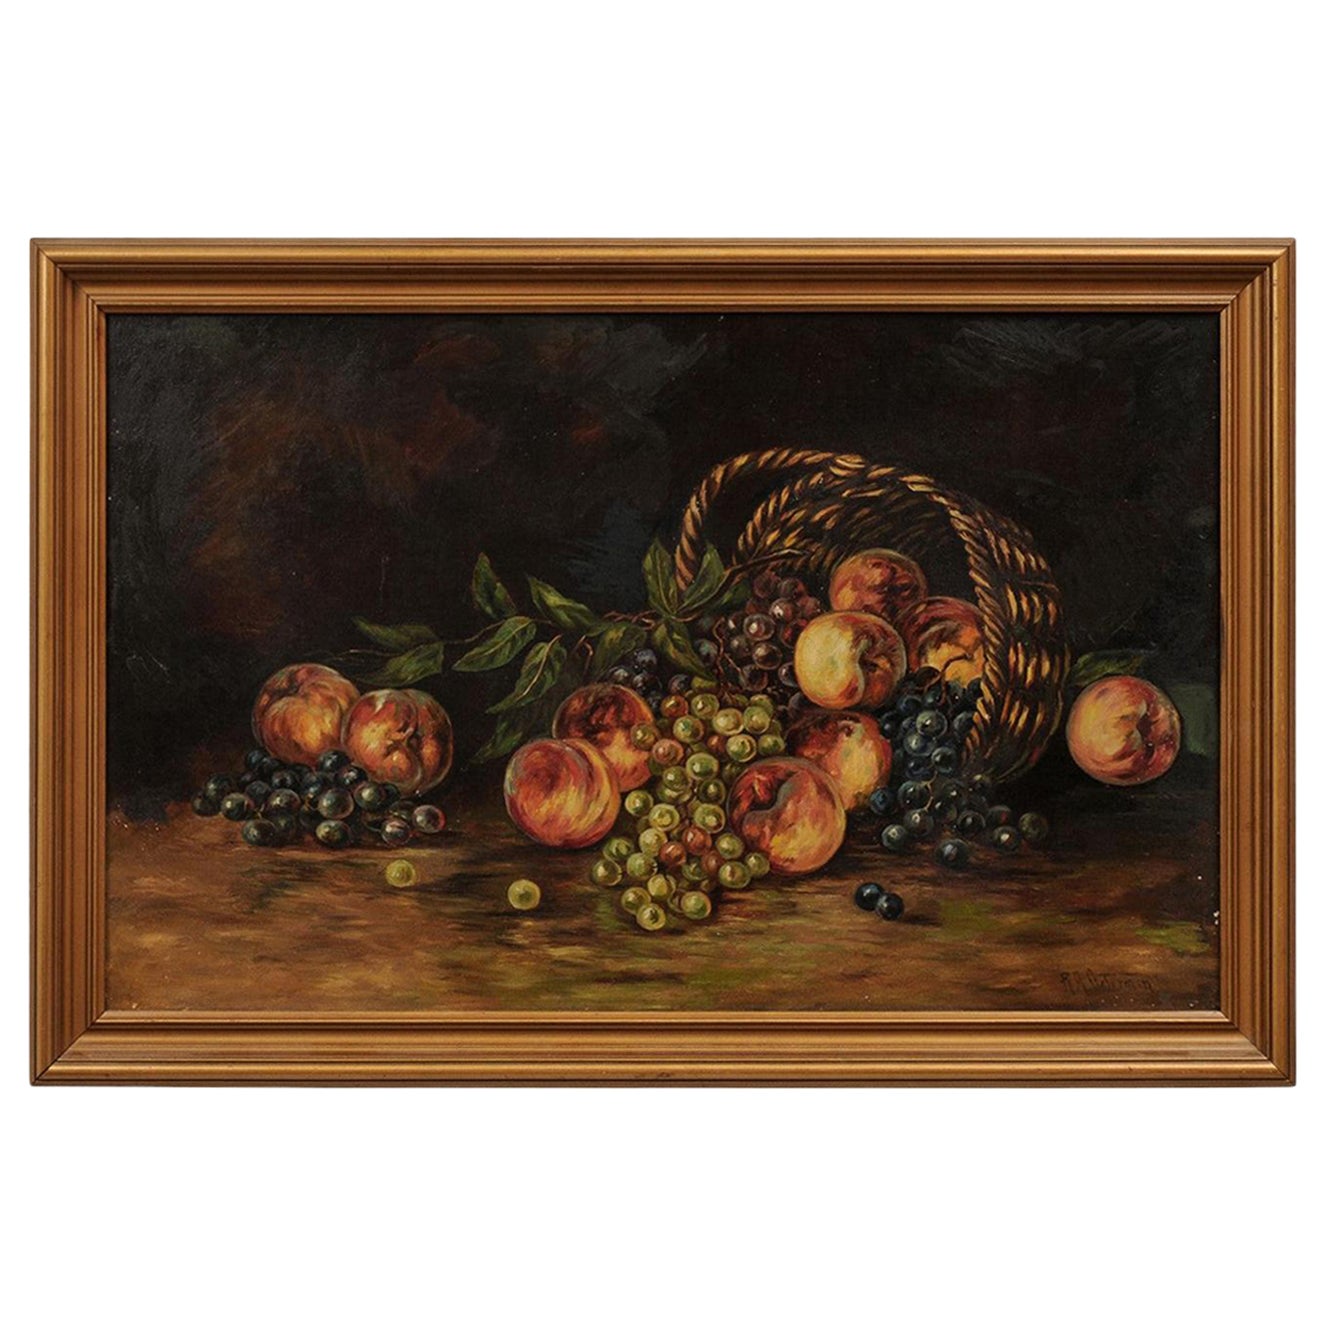 Peinture de nature morte américaine du 19ème siècle encadrée représentant des pêches et des raisins